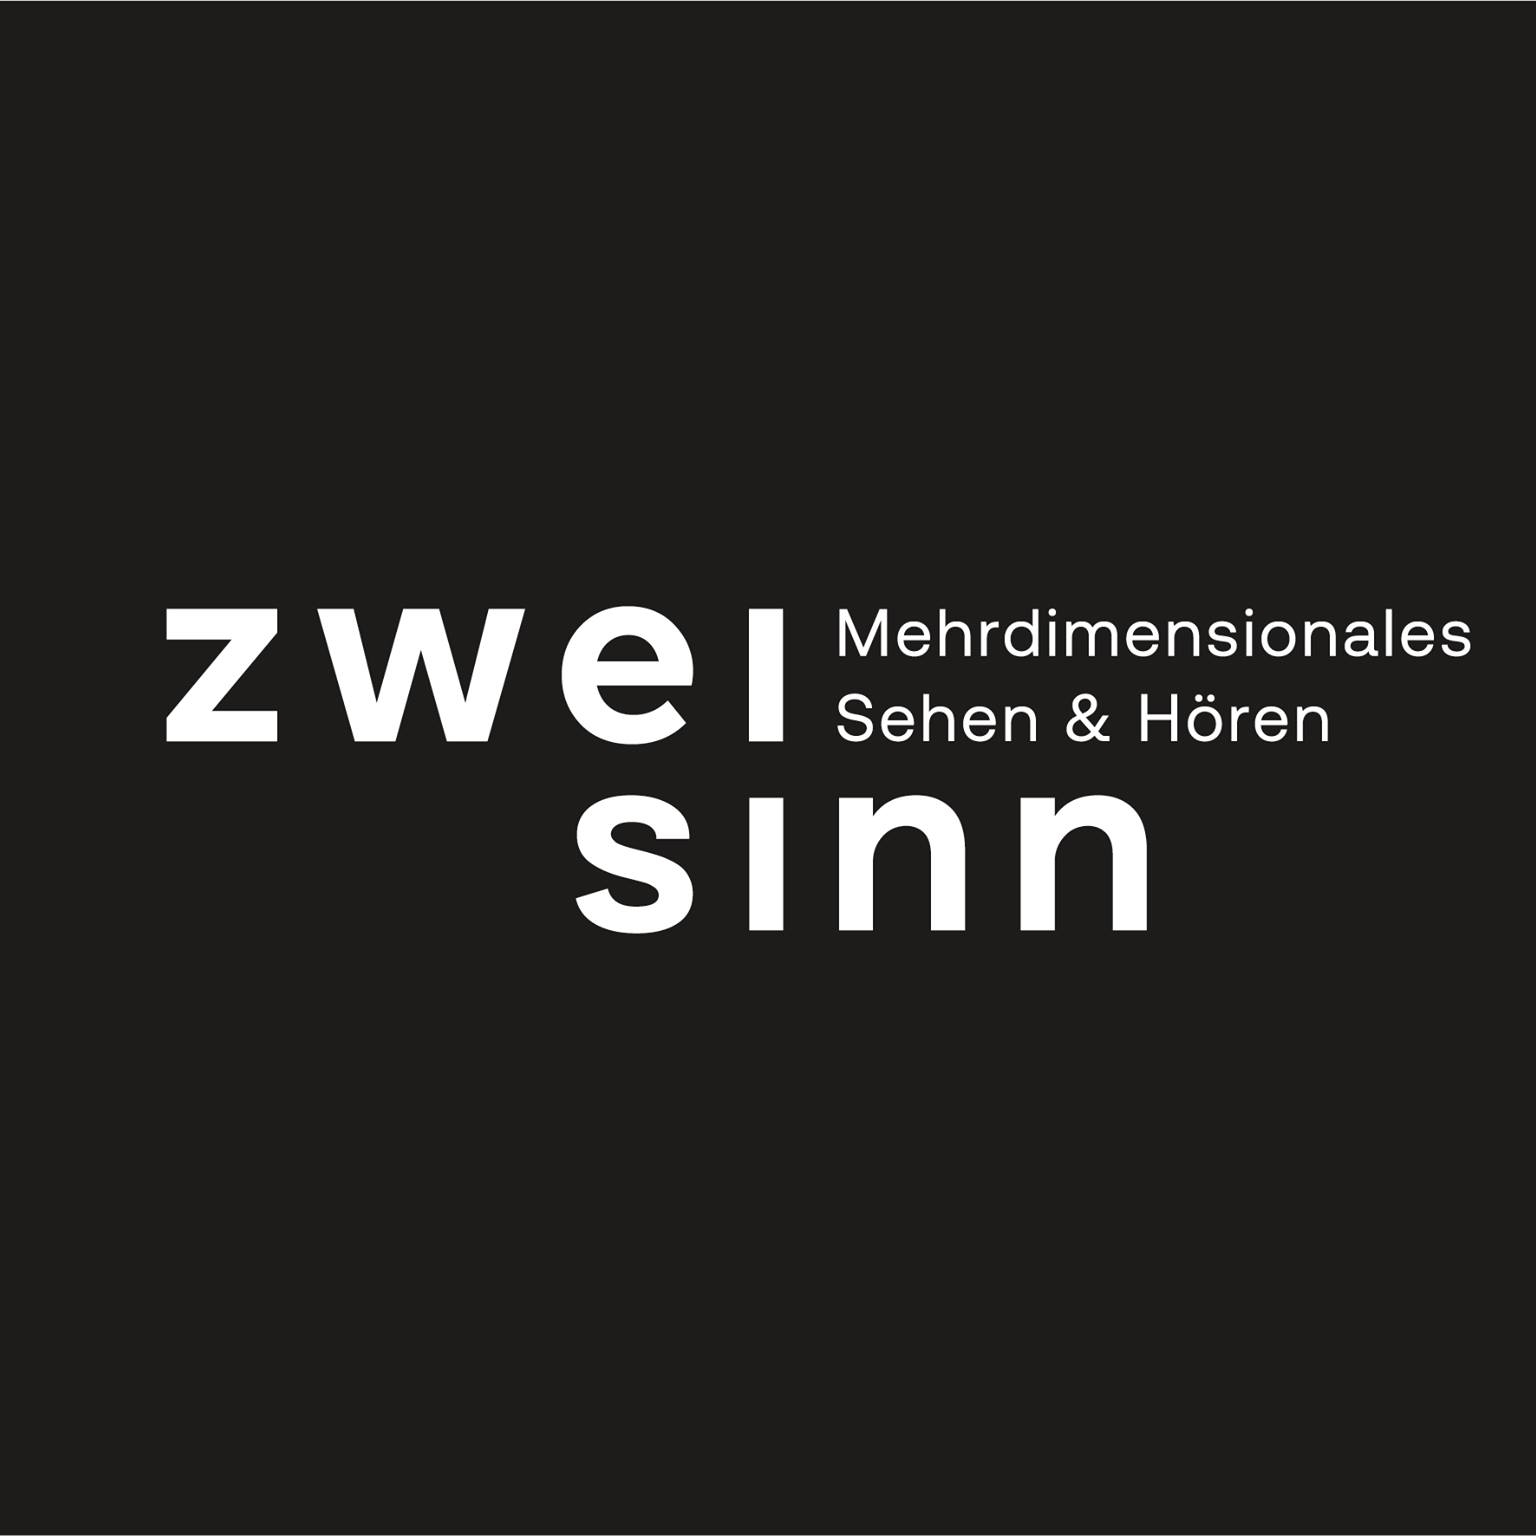 zweisinn logo